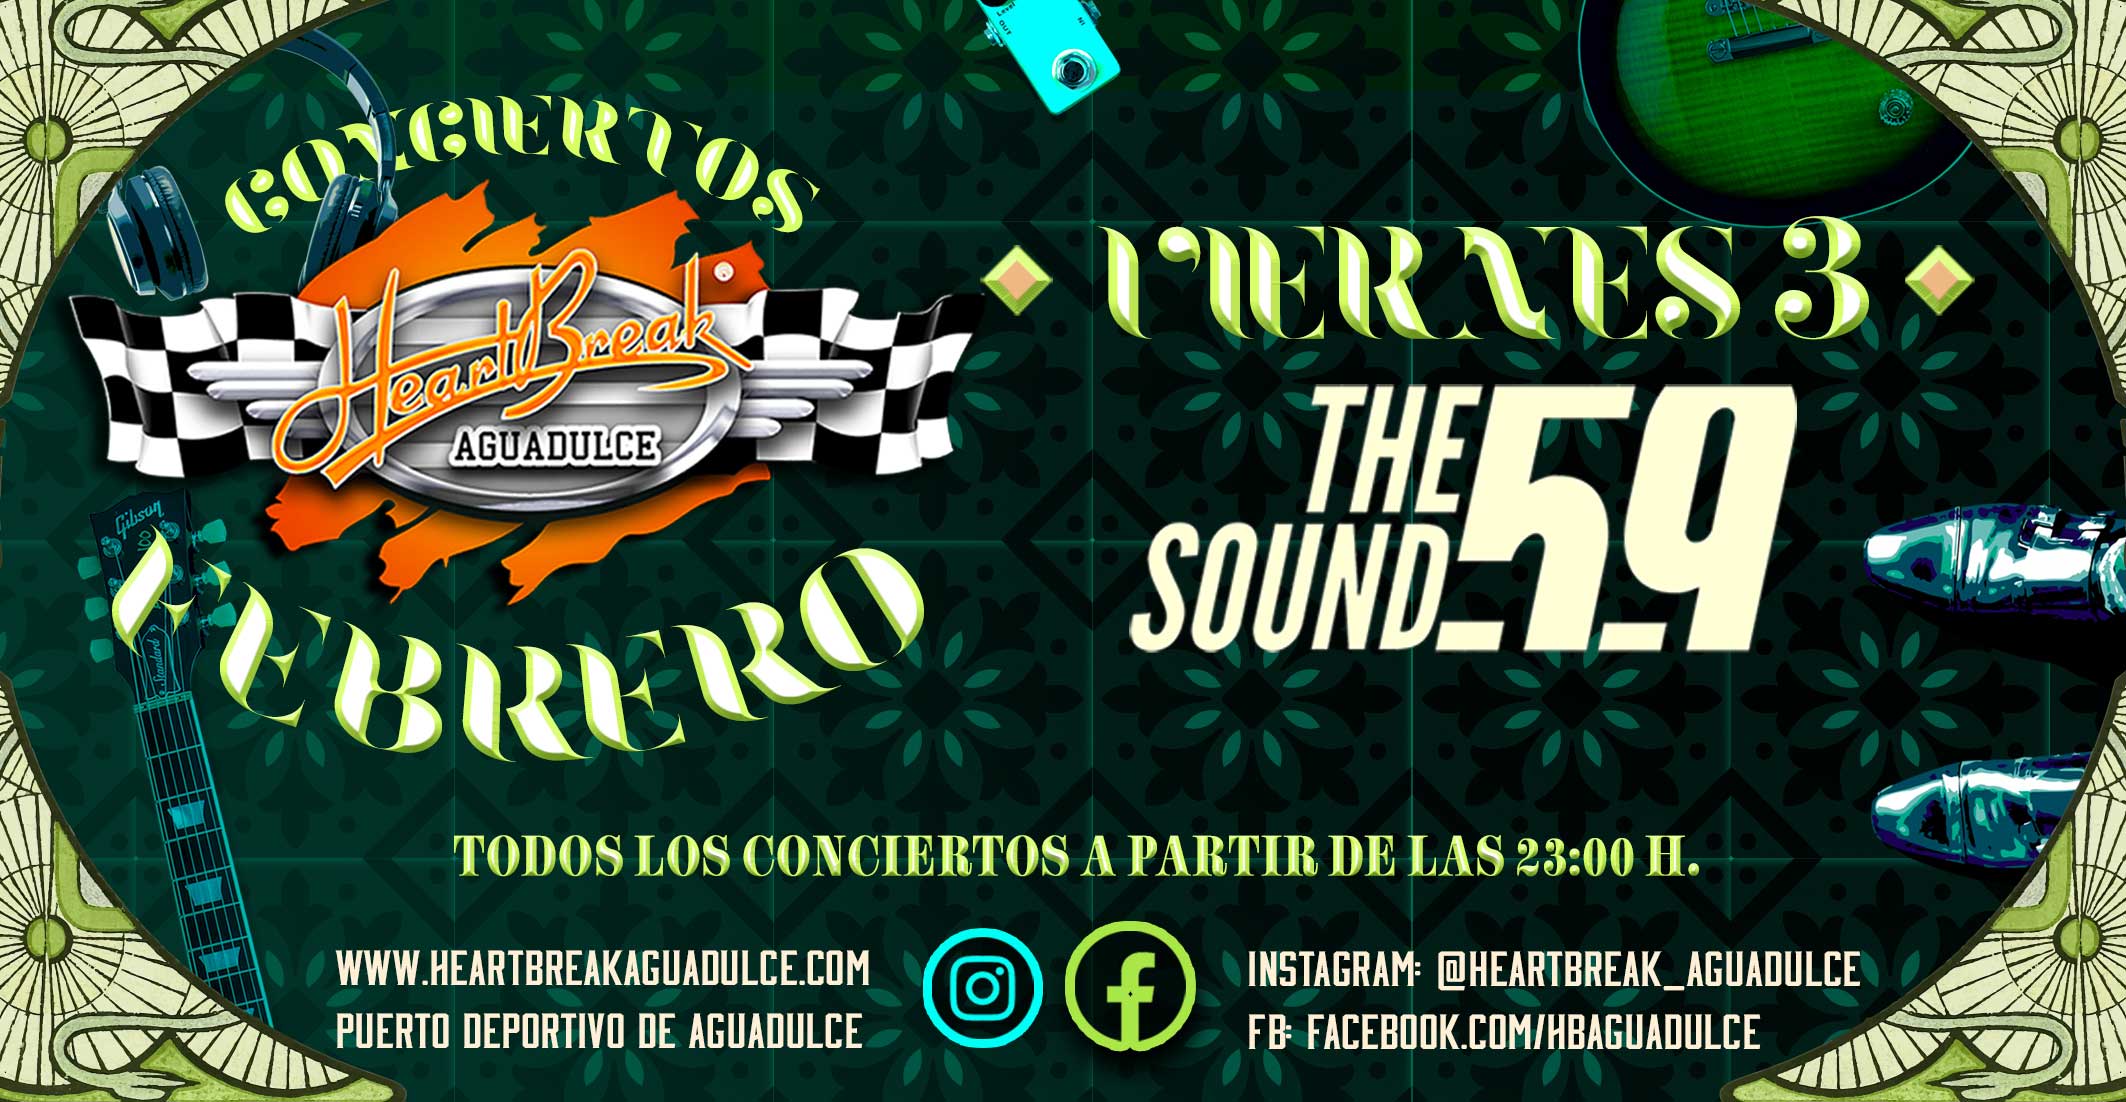 Concierto de The Sound 59